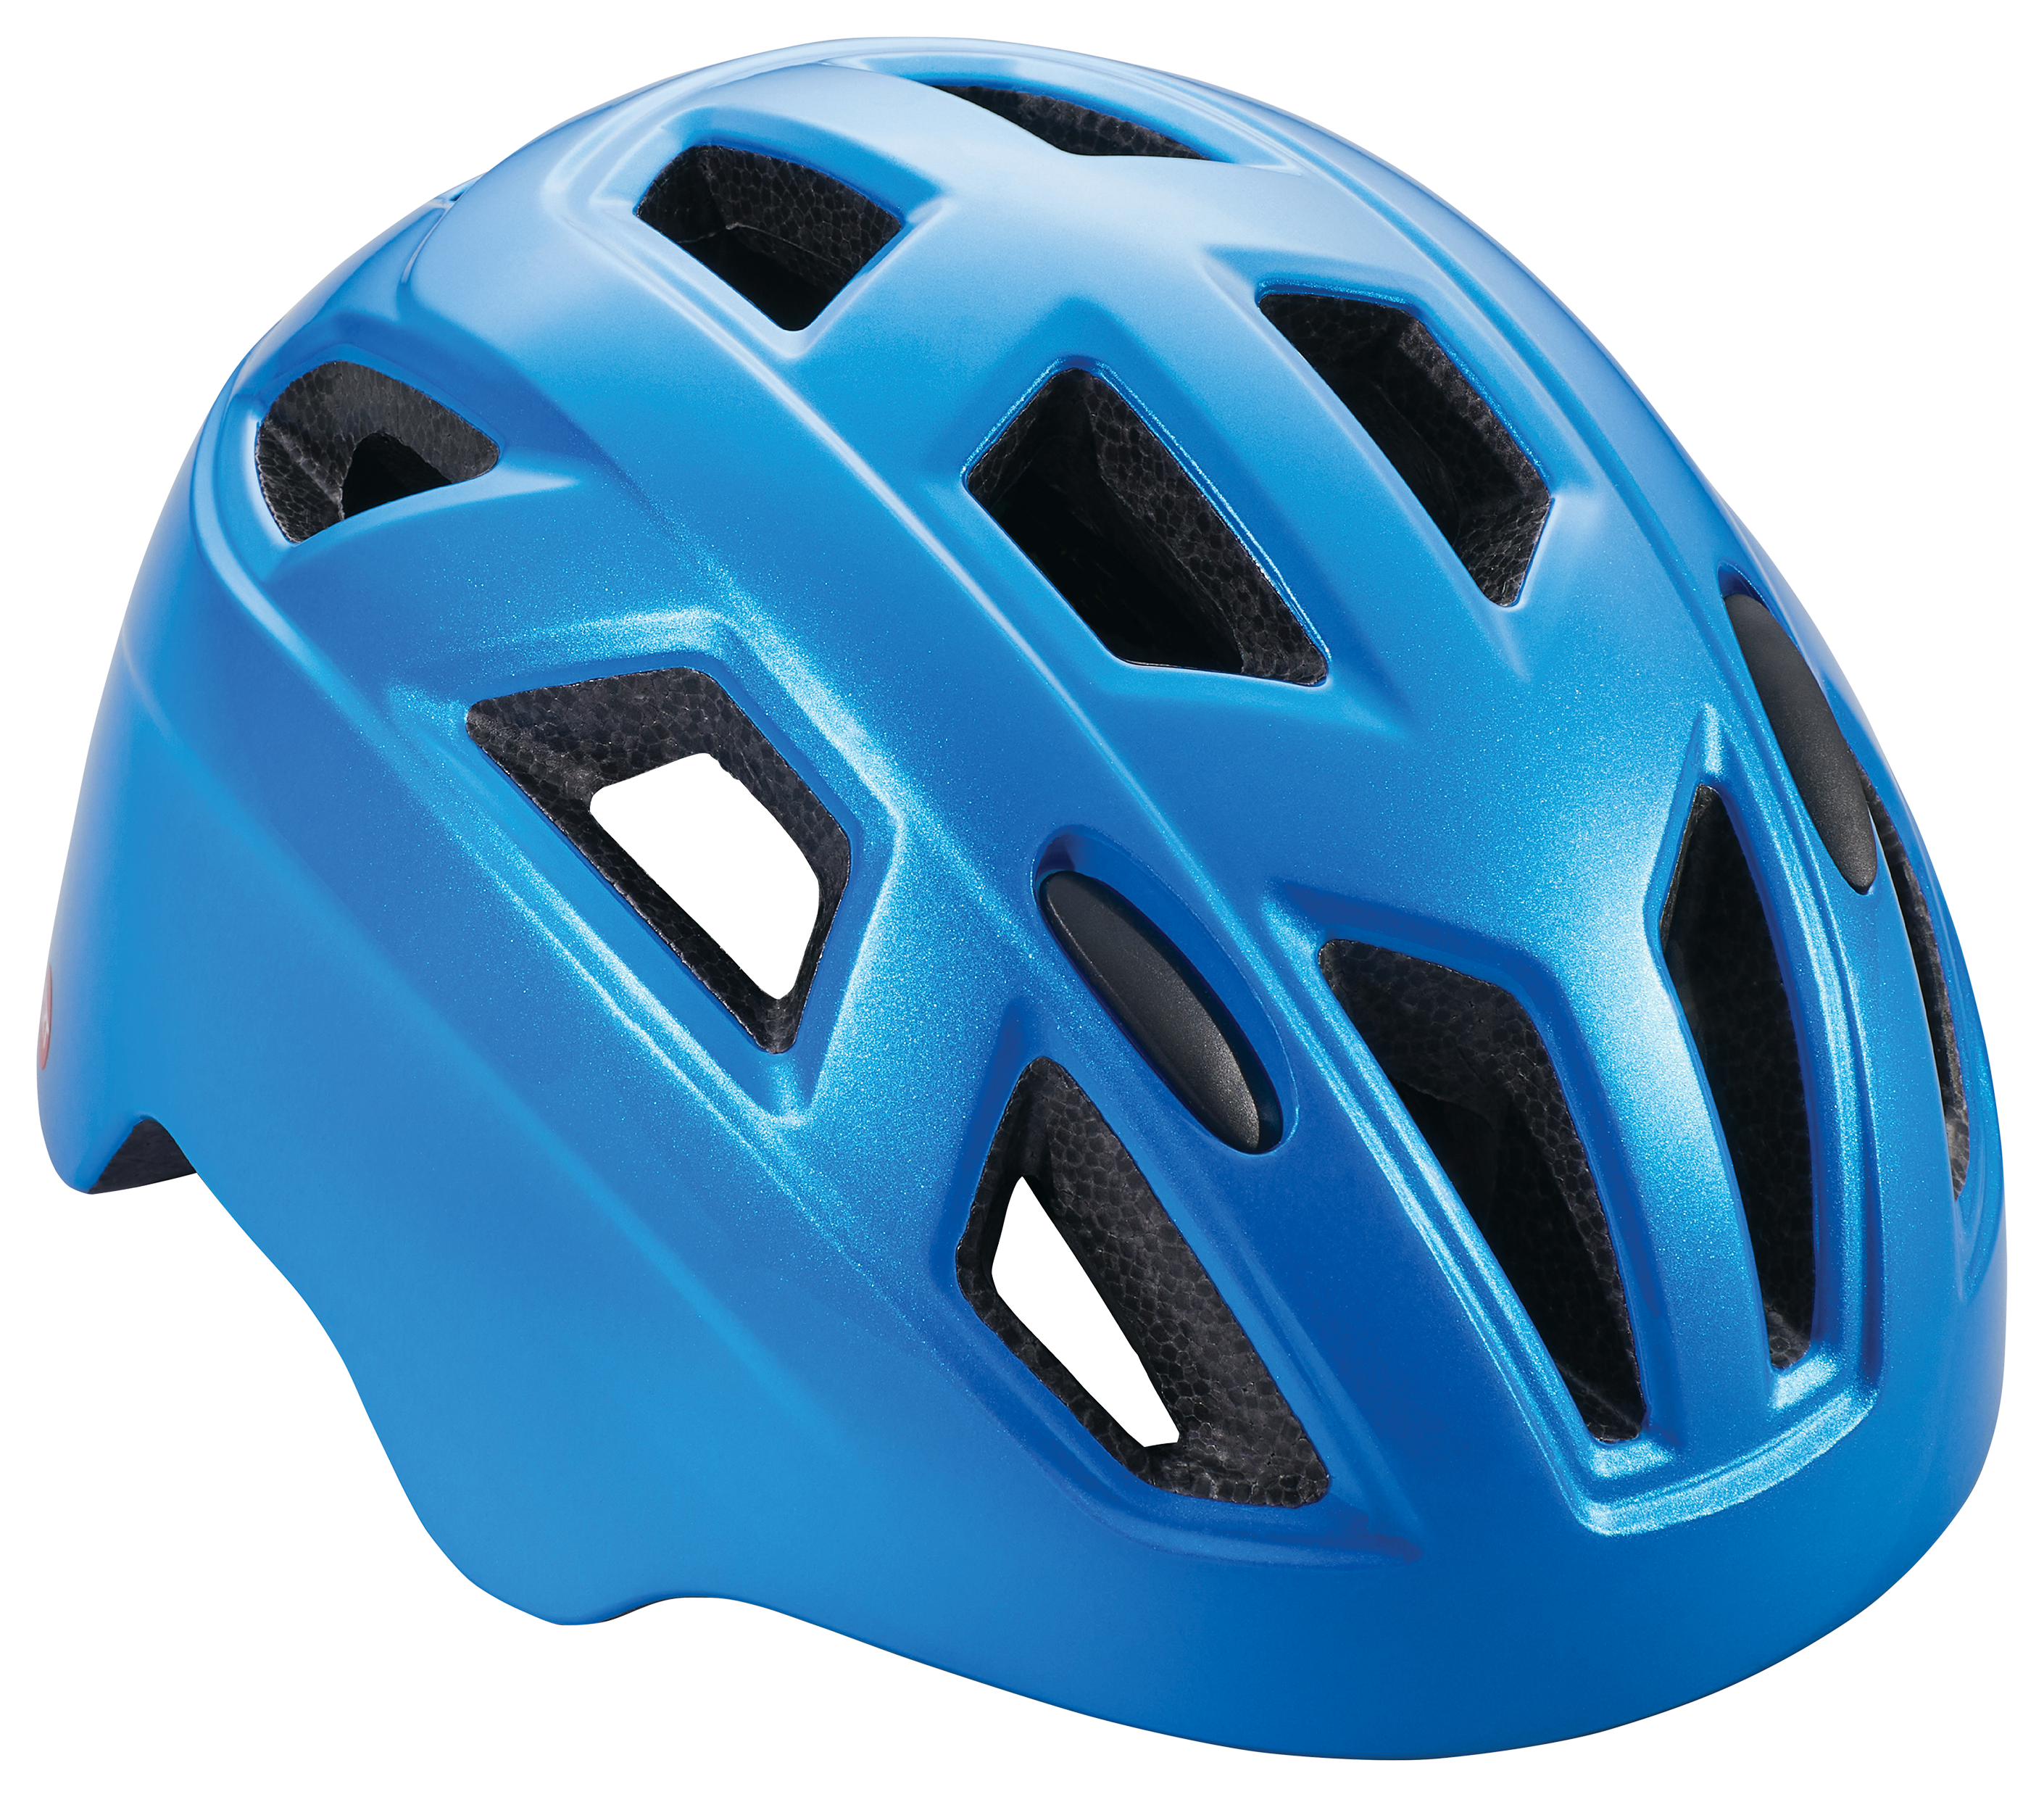 Schwinn Chroma ERT Bike Helmet for Kids - Electric Blue